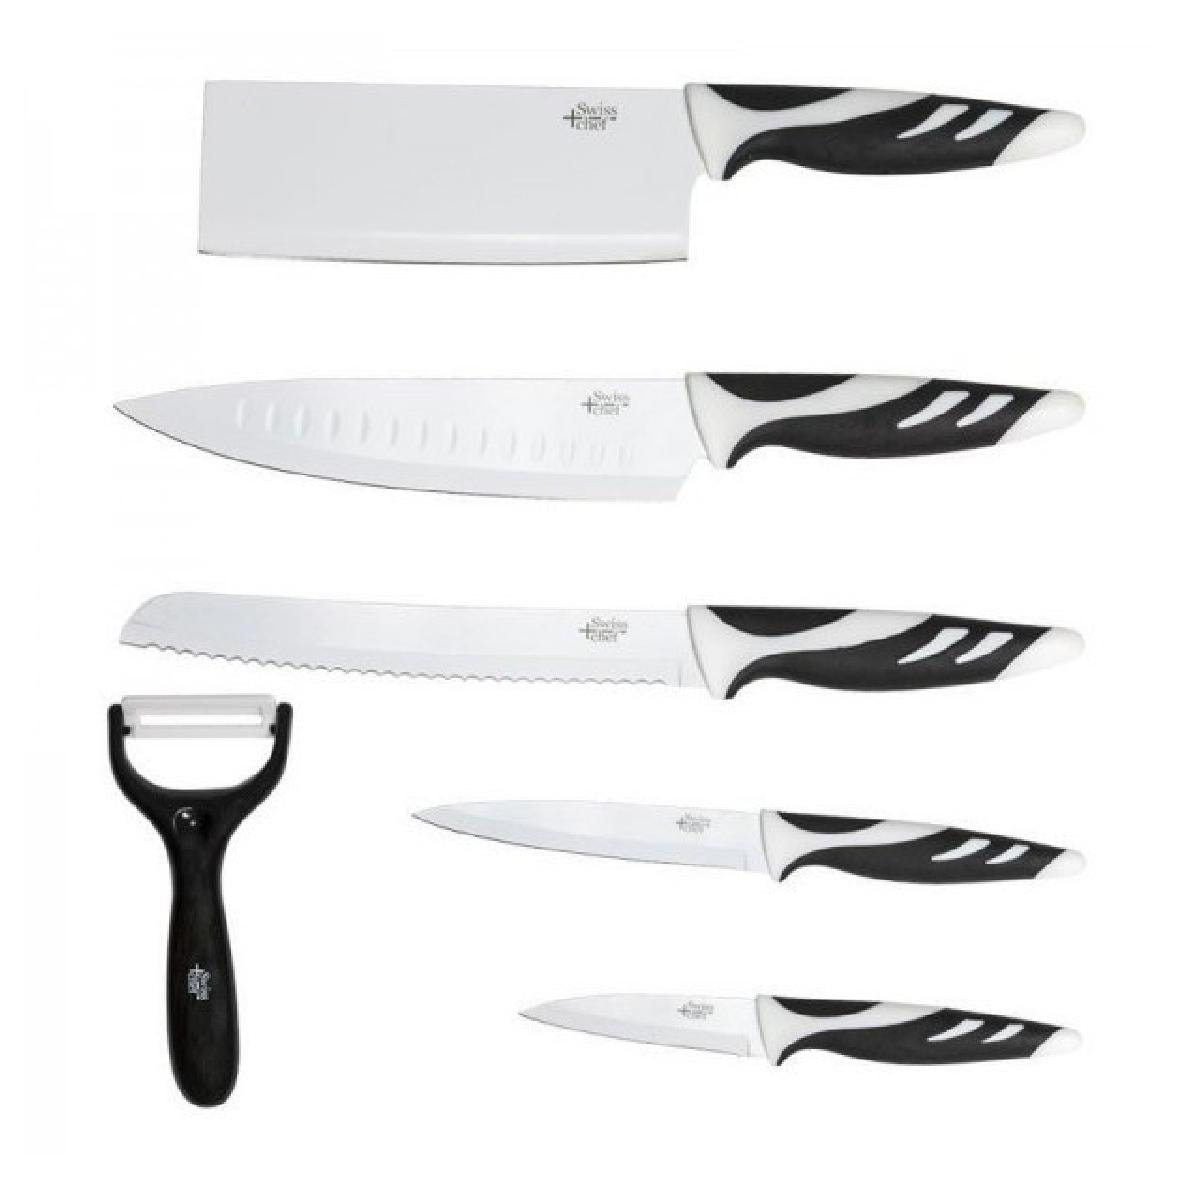 Cecotec - Cecotec Set da 6 coltelli professionali svizzeri in colore  bianco. Con uno spess